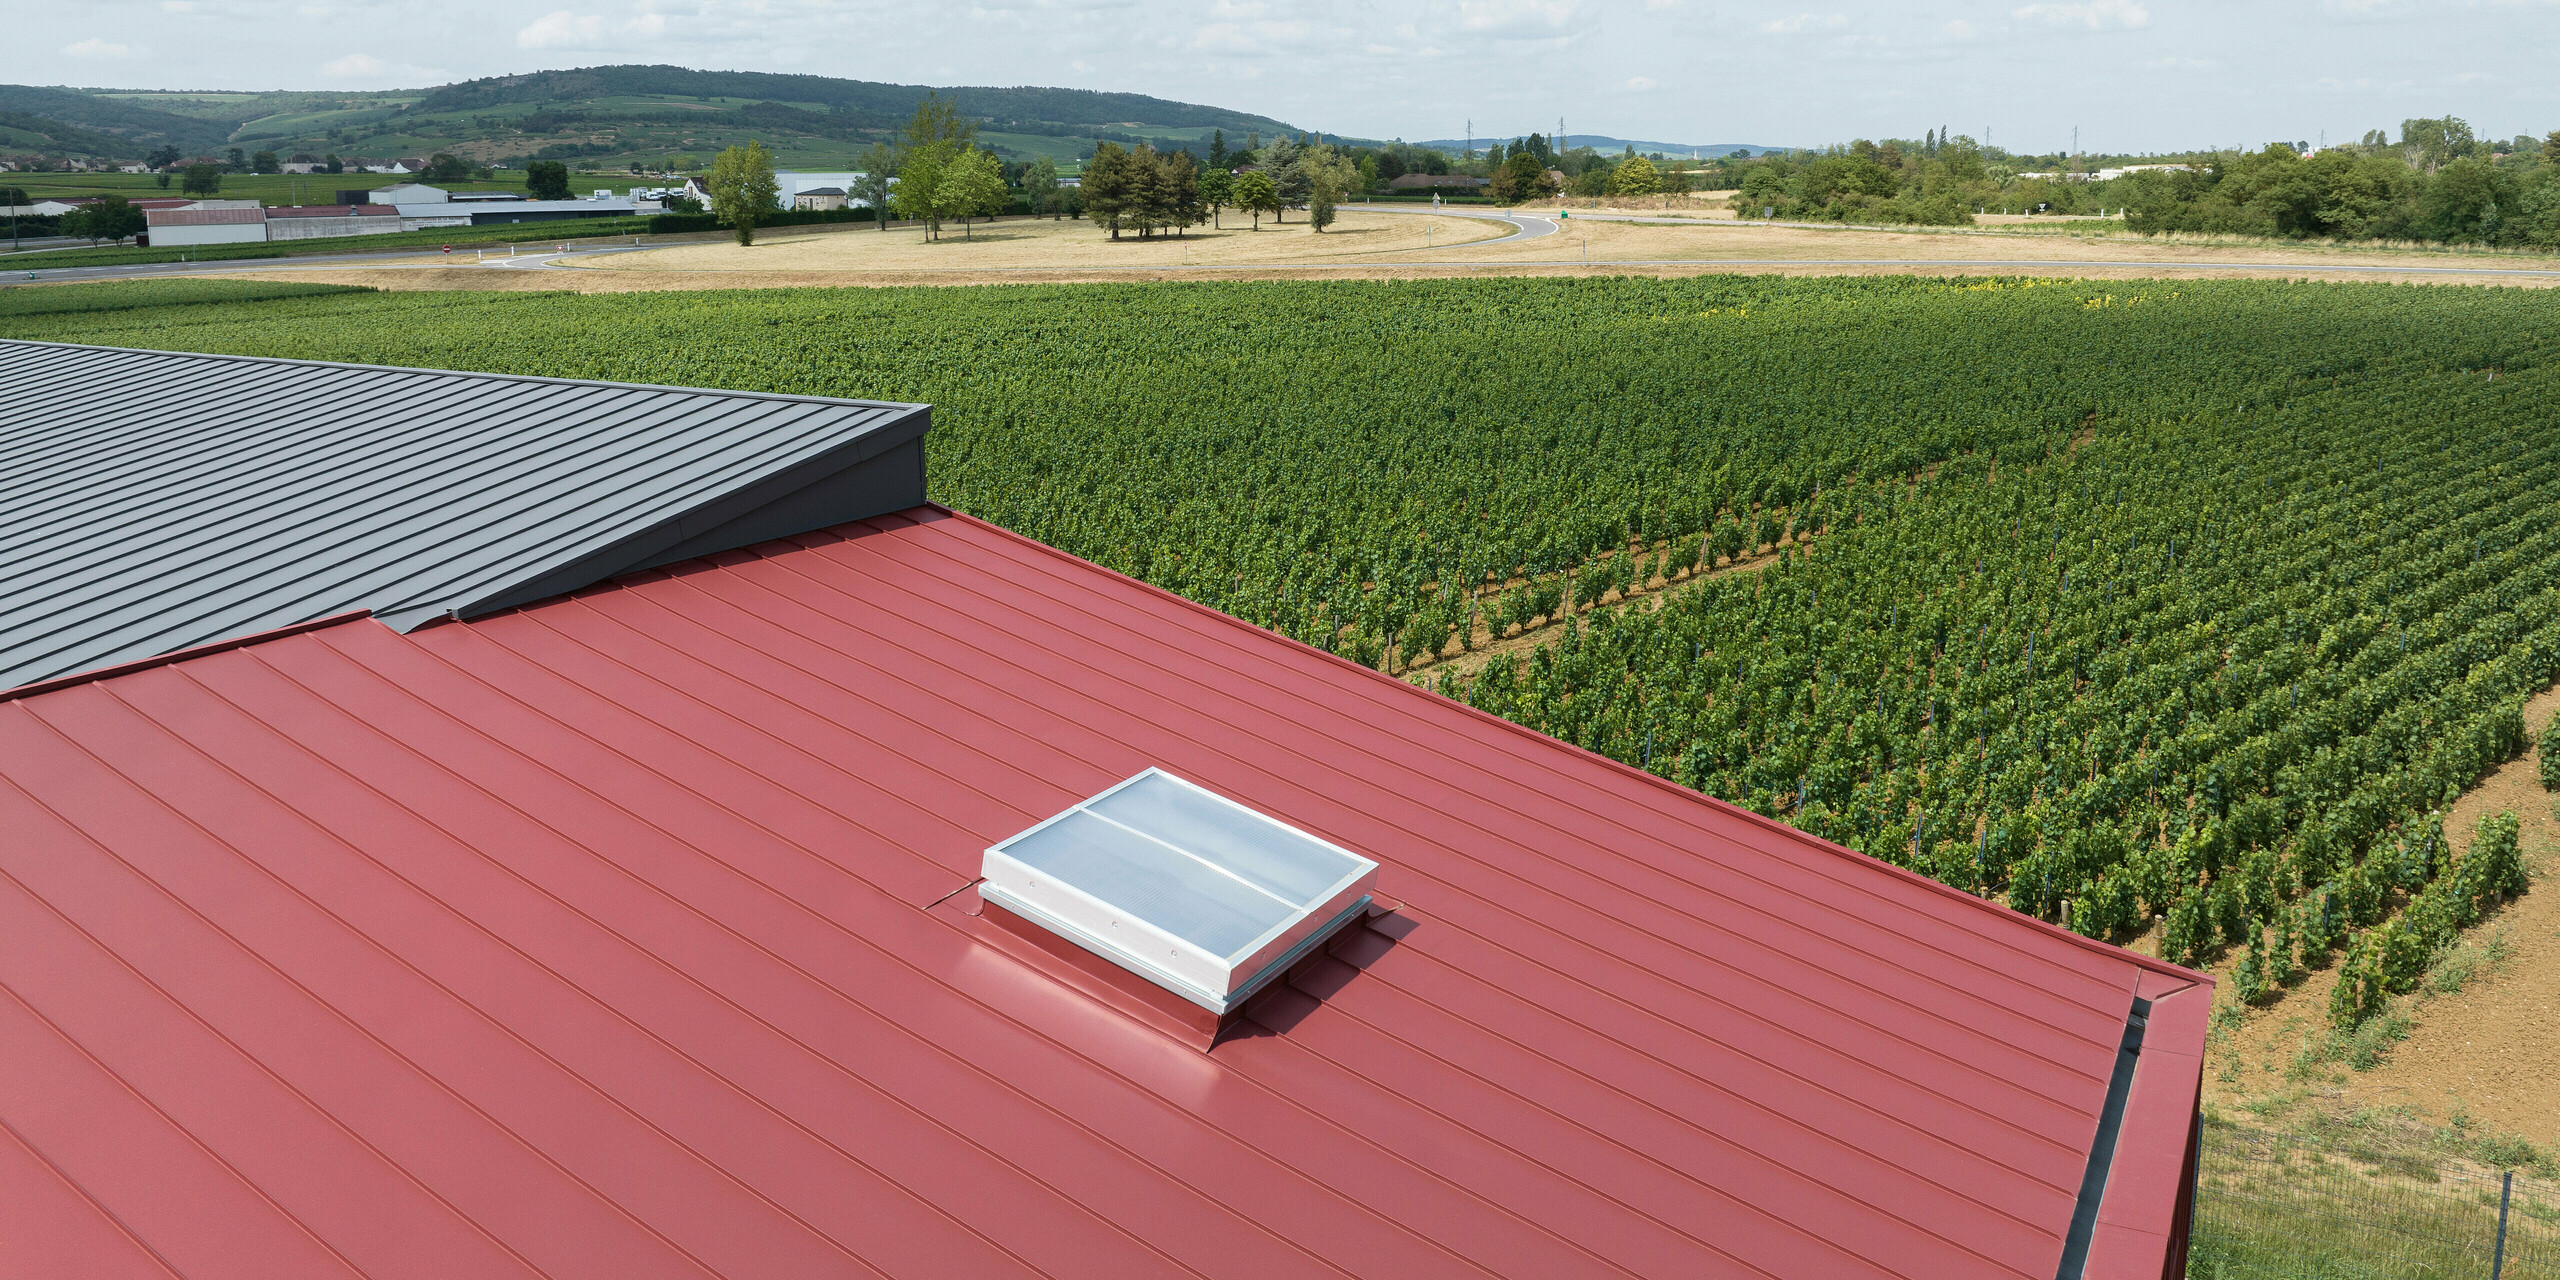 L'image montre une scène rurale avec un toit en aluminium de deux couleurs différentes. Une lucarne est installée sur la partie rouge oxyde du toit, indiquant une structure spatiale habitable en dessous. La zone gris sombre du toit est plutôt petite sur le bord gauche de l’image. En arrière-plan, vous pouvez voir les zones agricoles d'un domaine viticole. La composition de l'image vise à montrer l'intégration des systèmes modernes de toiture en aluminium dans les environnements ruraux.